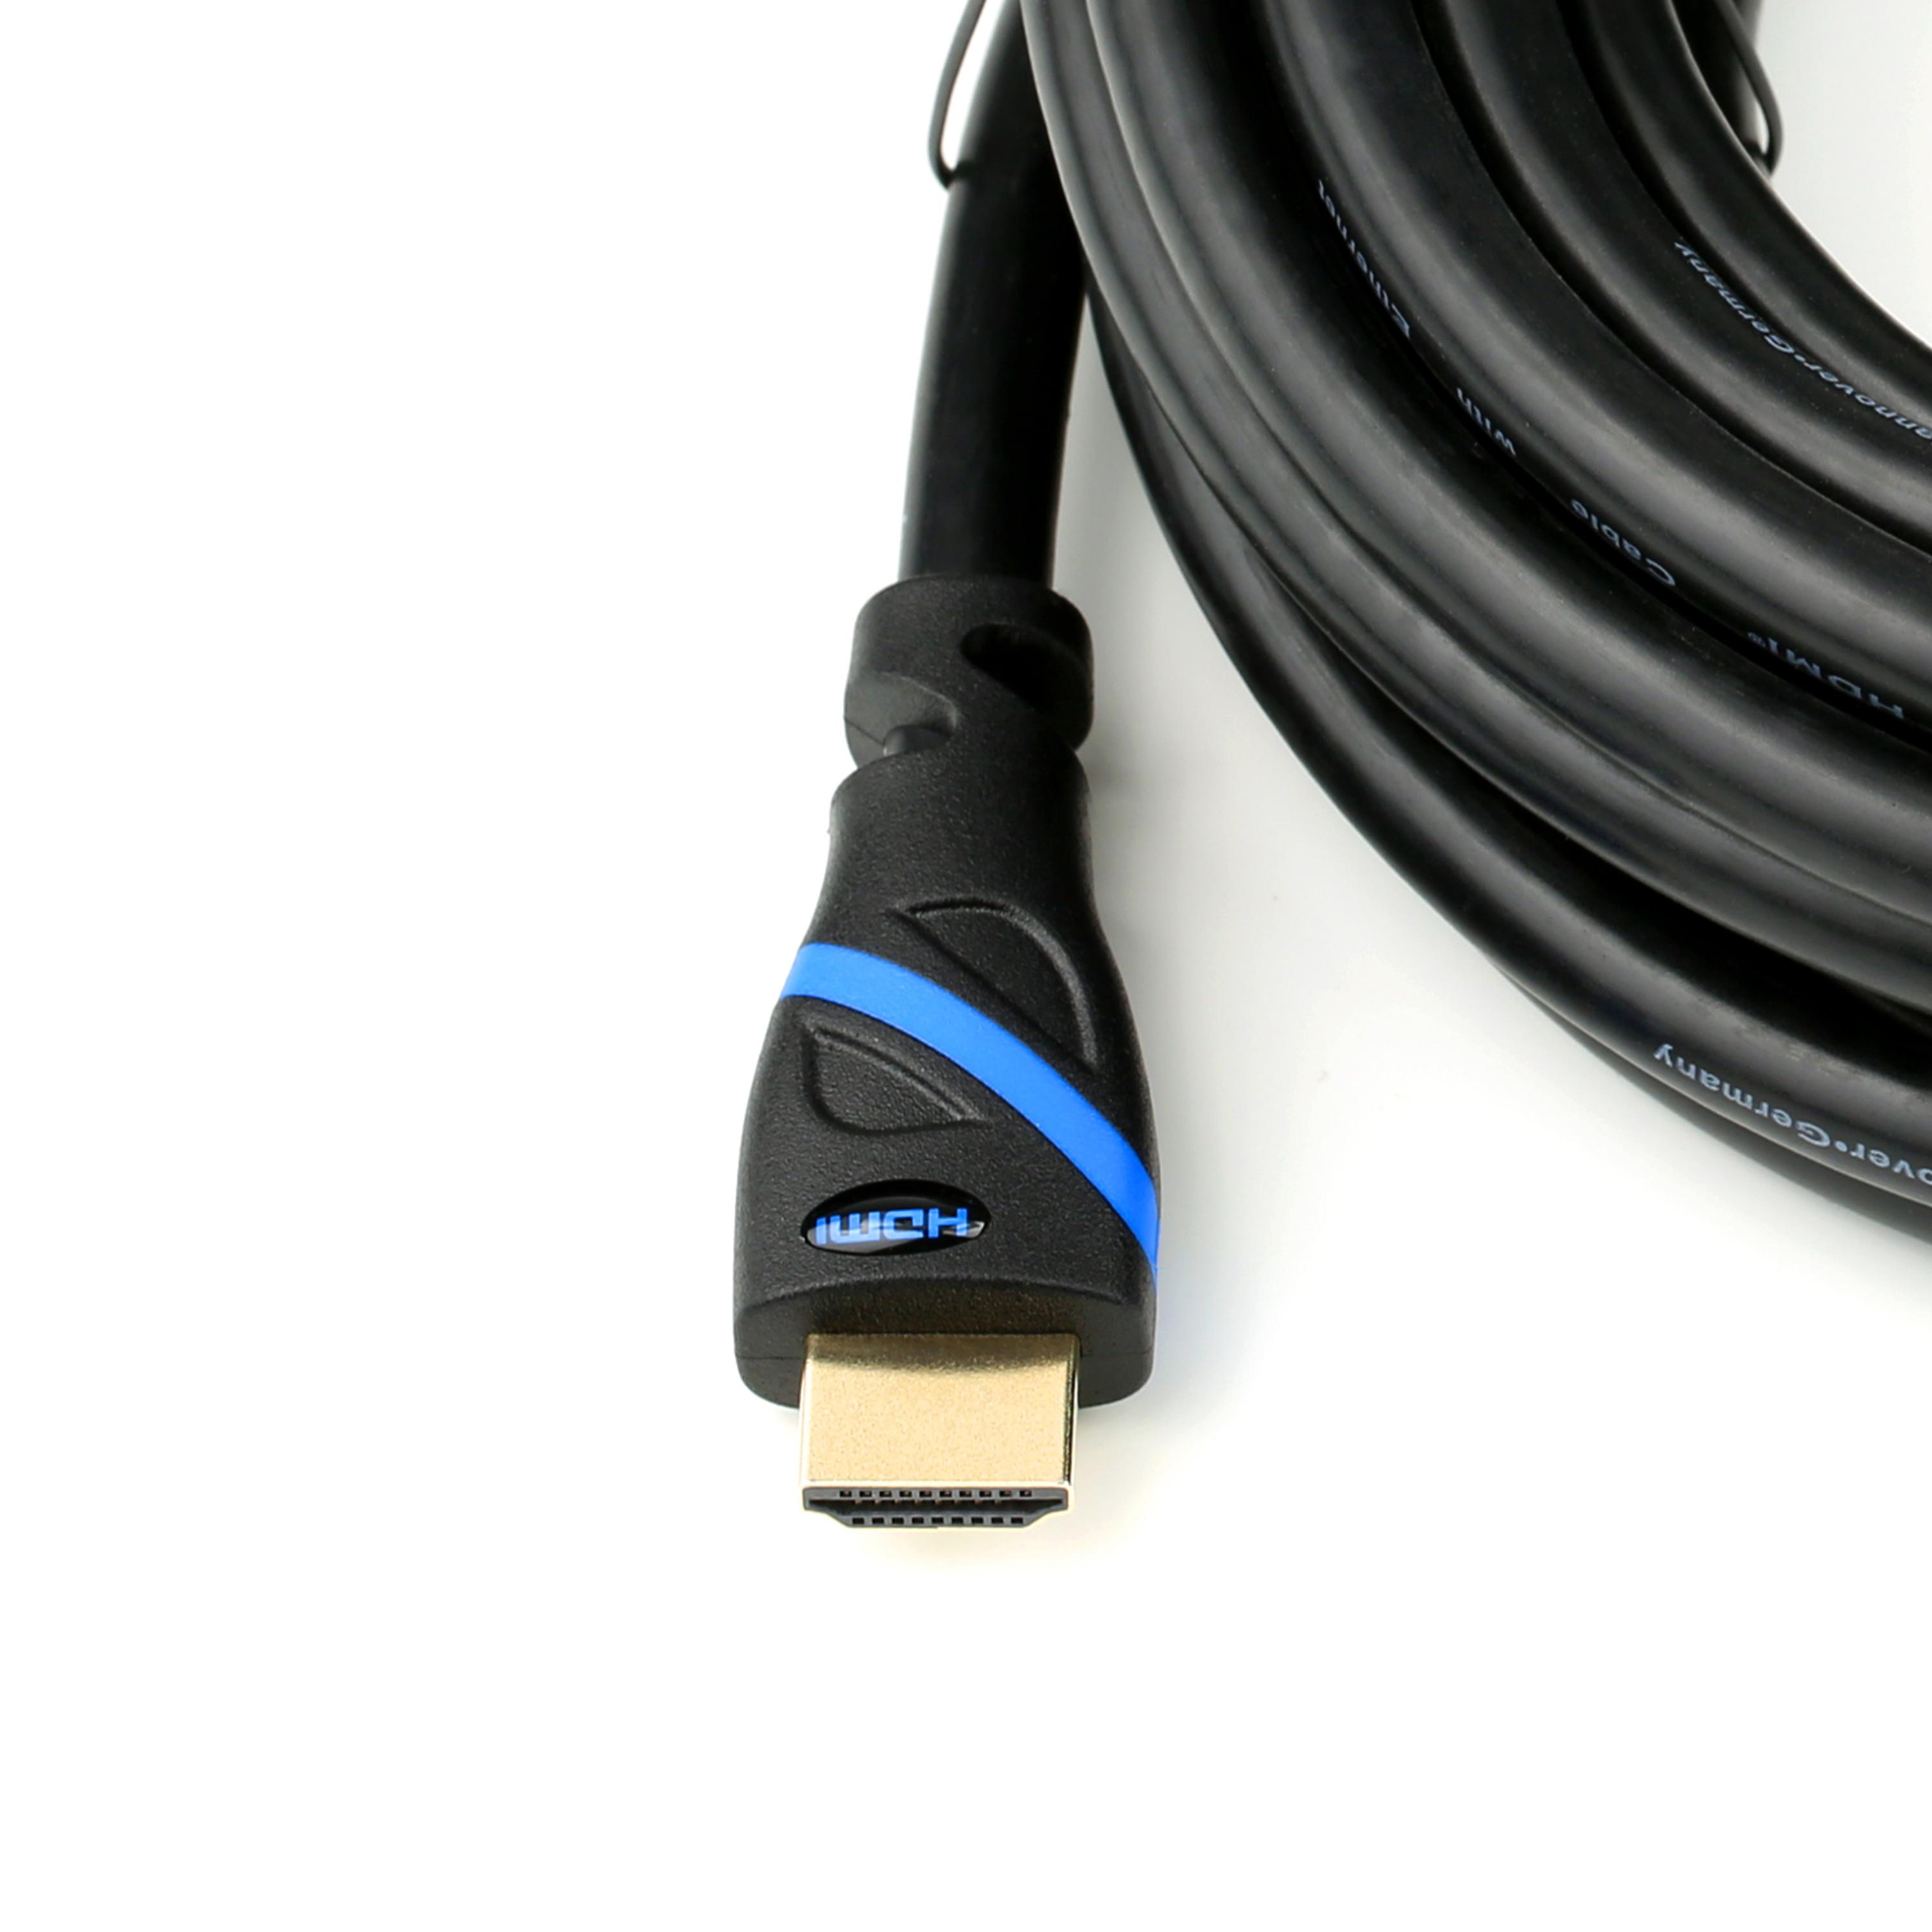 CSL HDMI 2.0 Kabel, schwarz/blau Kabel, 2m HDMI